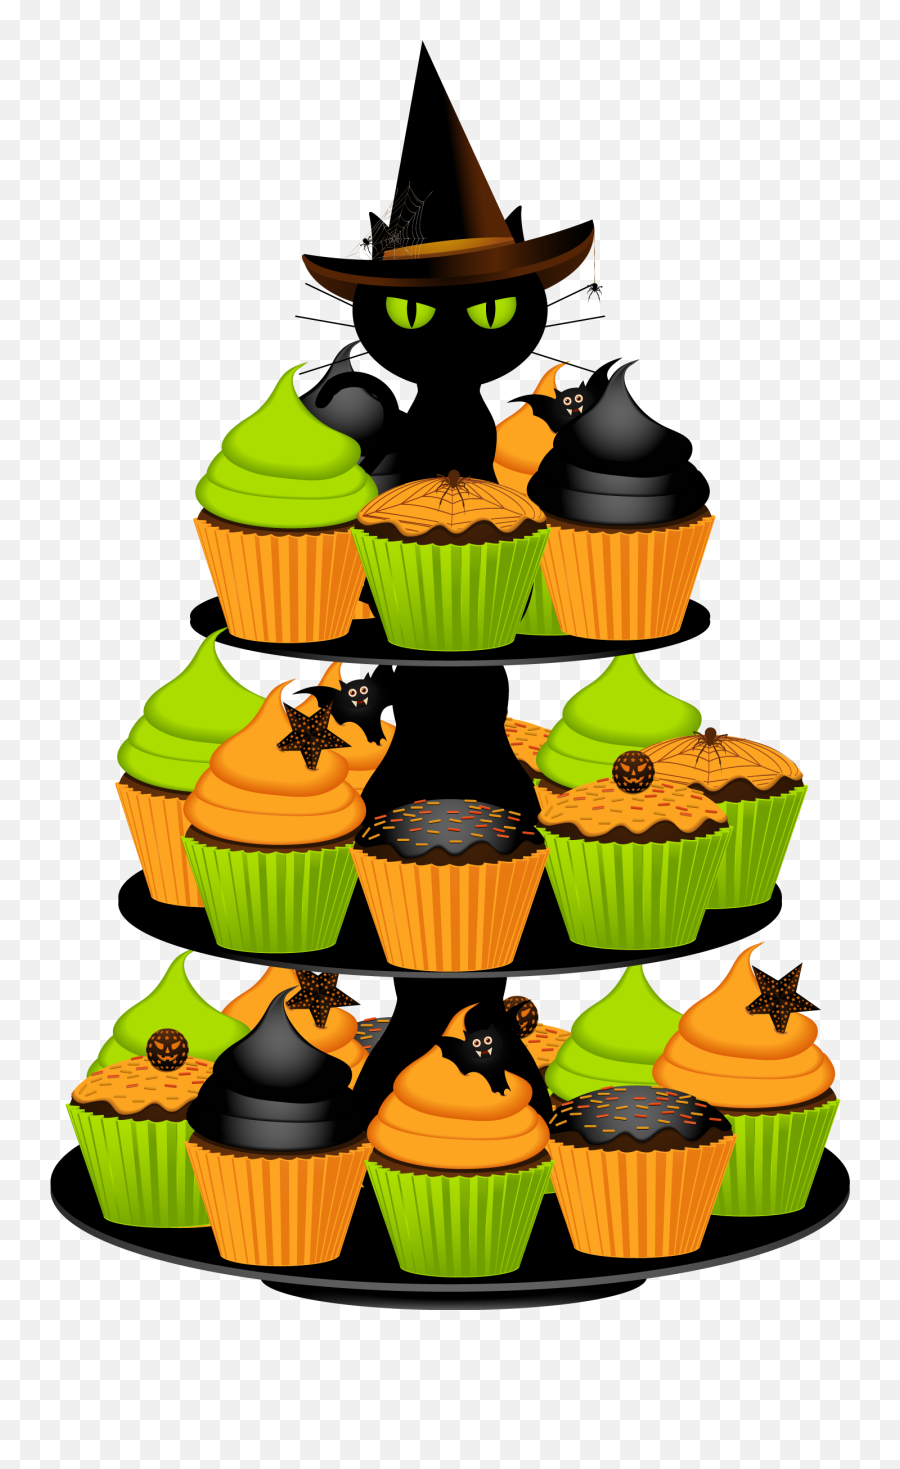 Clip Art Of Halloween Cupcakes Cakepinscom Halloween - Halloween Food Clipart Emoji,Halloween Clipart